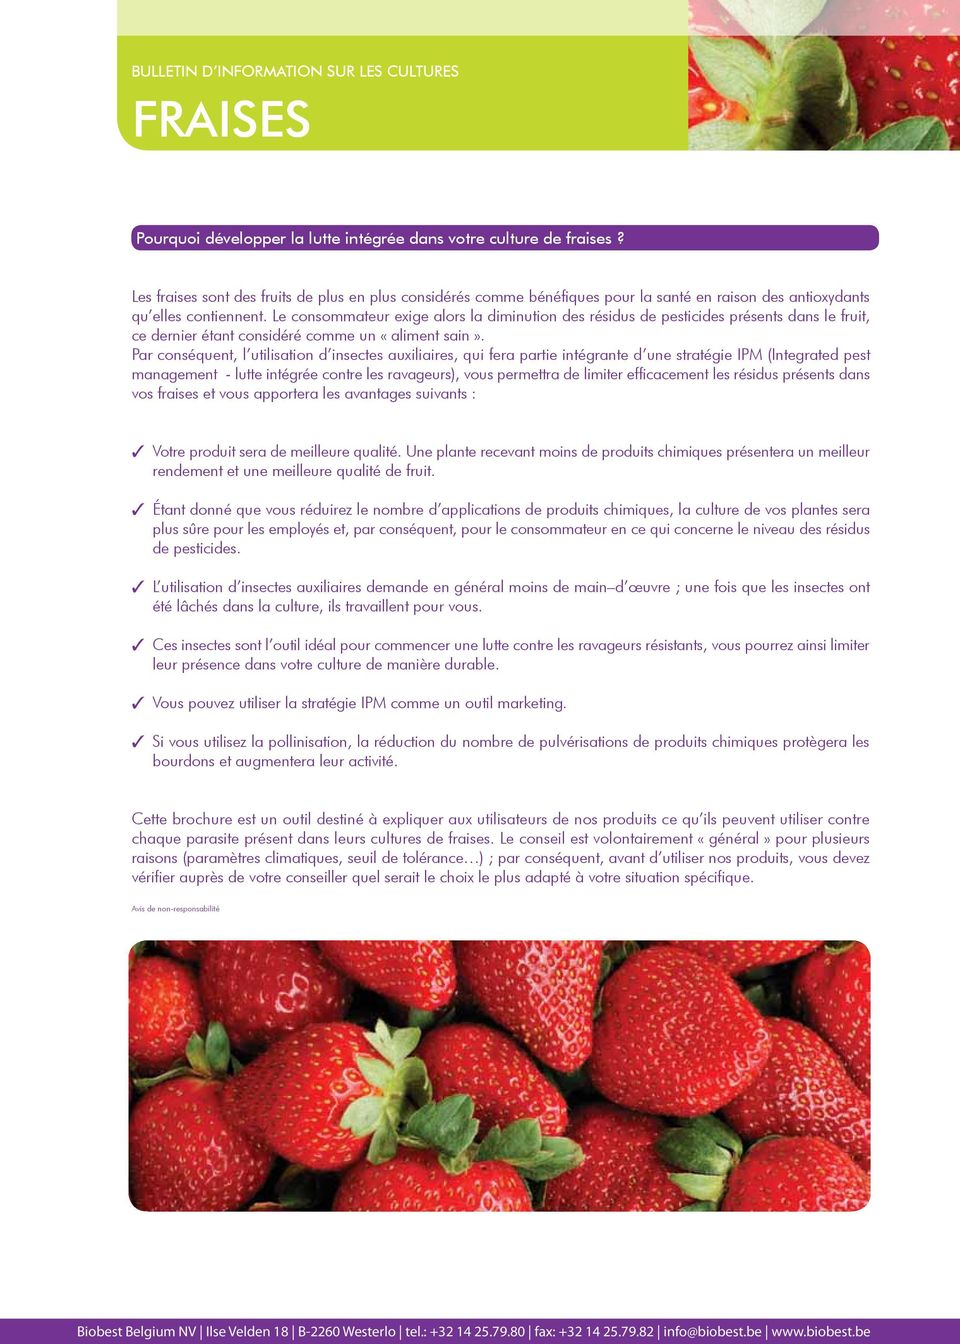 Le consommateur exige alors la diminution des résidus de pesticides présents dans le fruit, ce dernier étant considéré comme un «aliment sain».